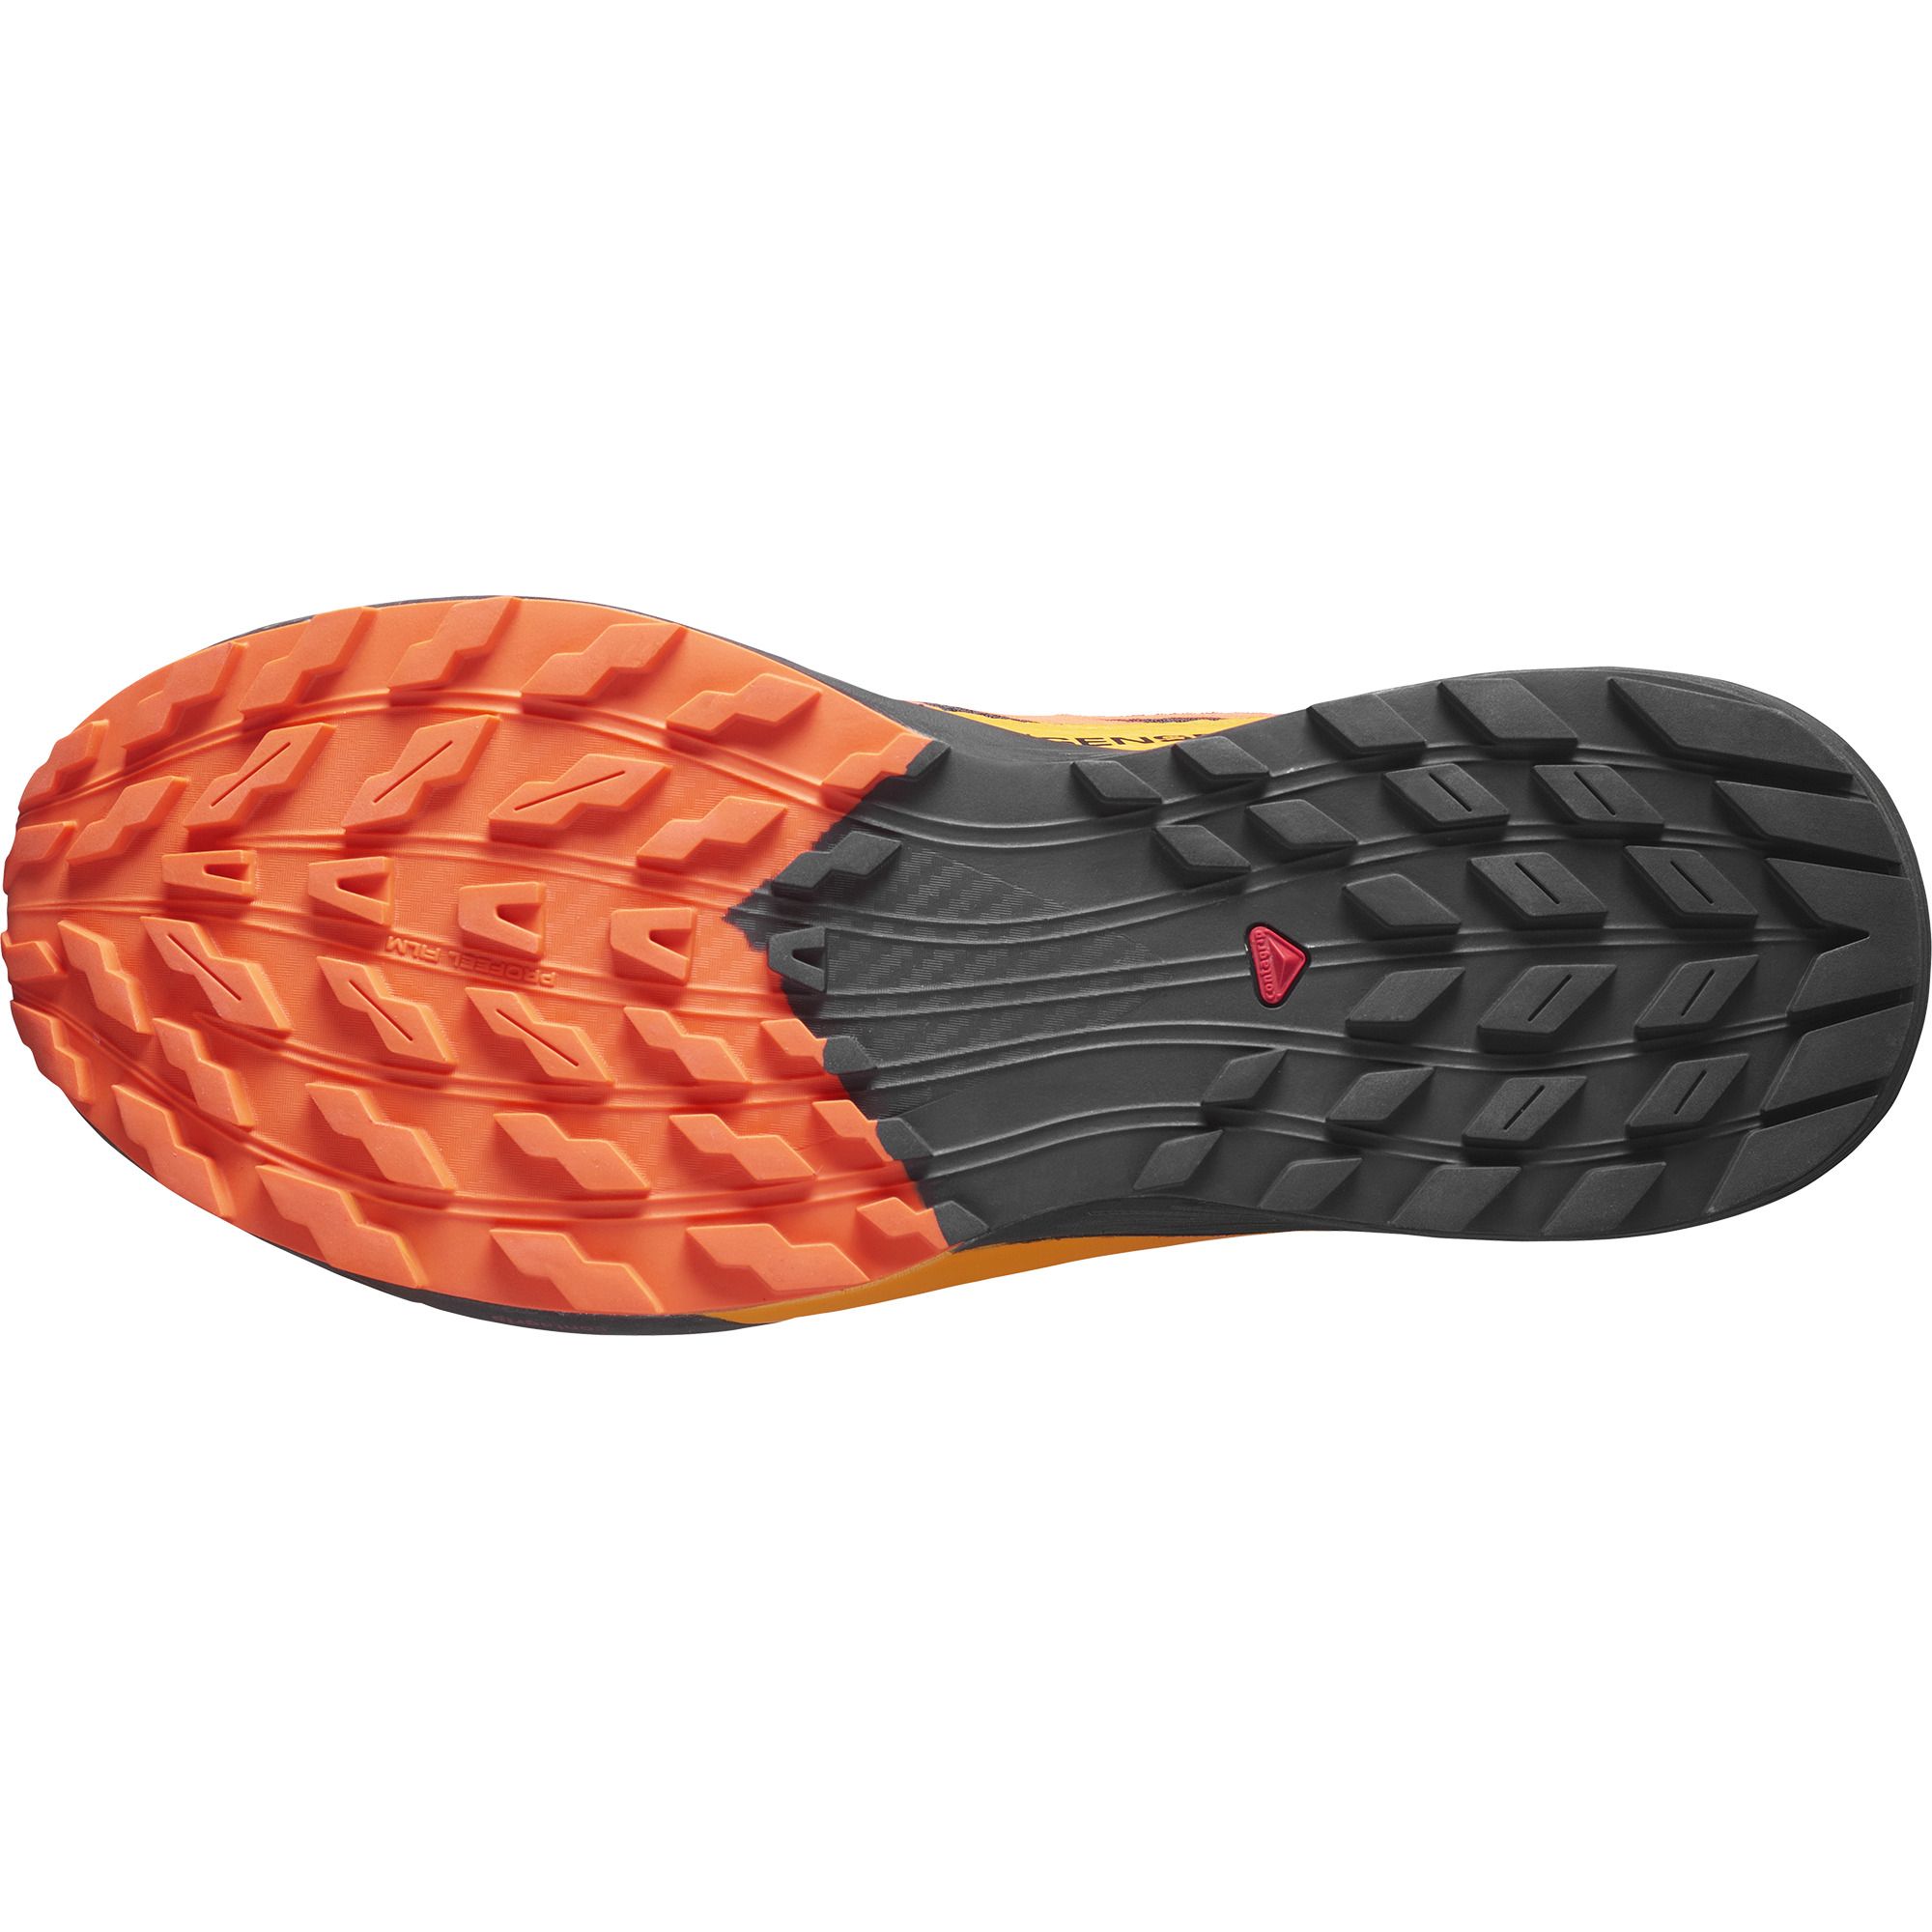 Salomon SENSE RIDE 5 GTX, moški trail tekaški copati, oranžna | Intersport